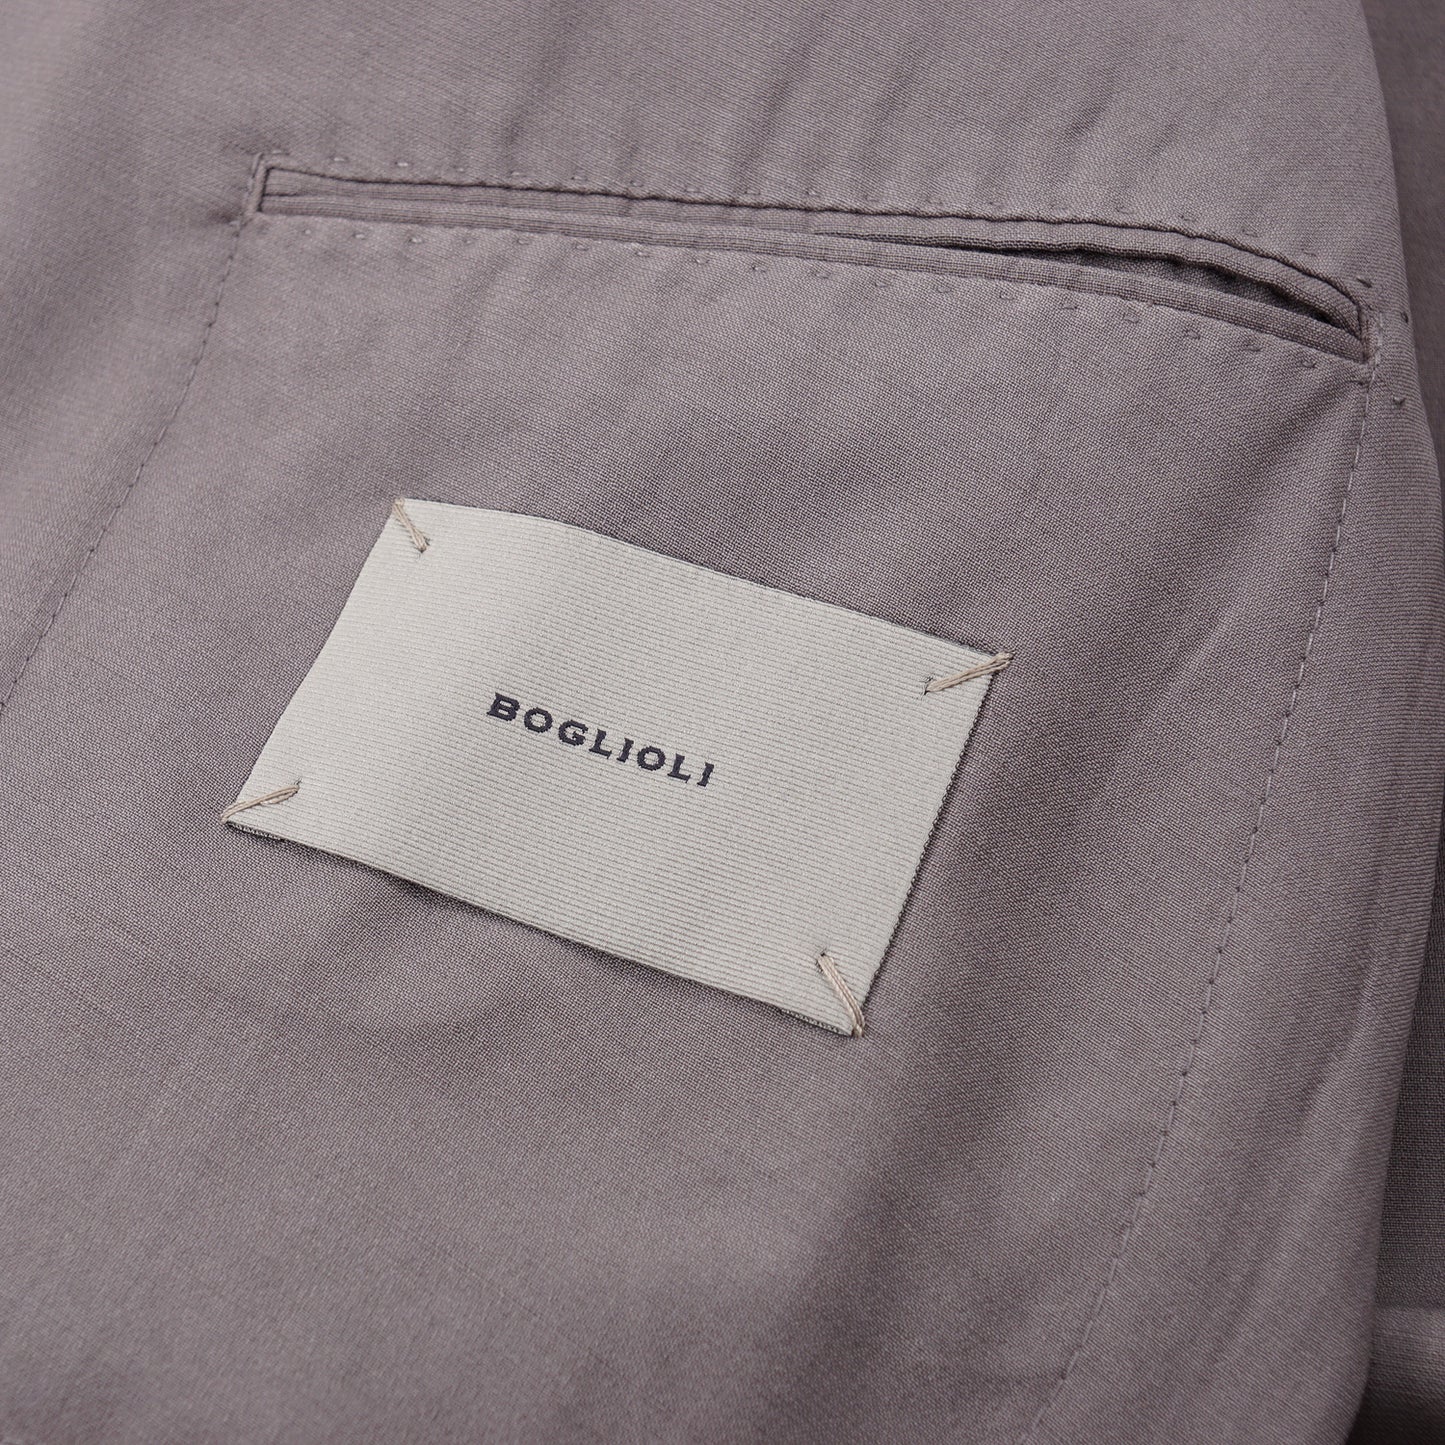 Boglioli Lightweight Wool 'K Jacket' Sport Coat - Top Shelf Apparel